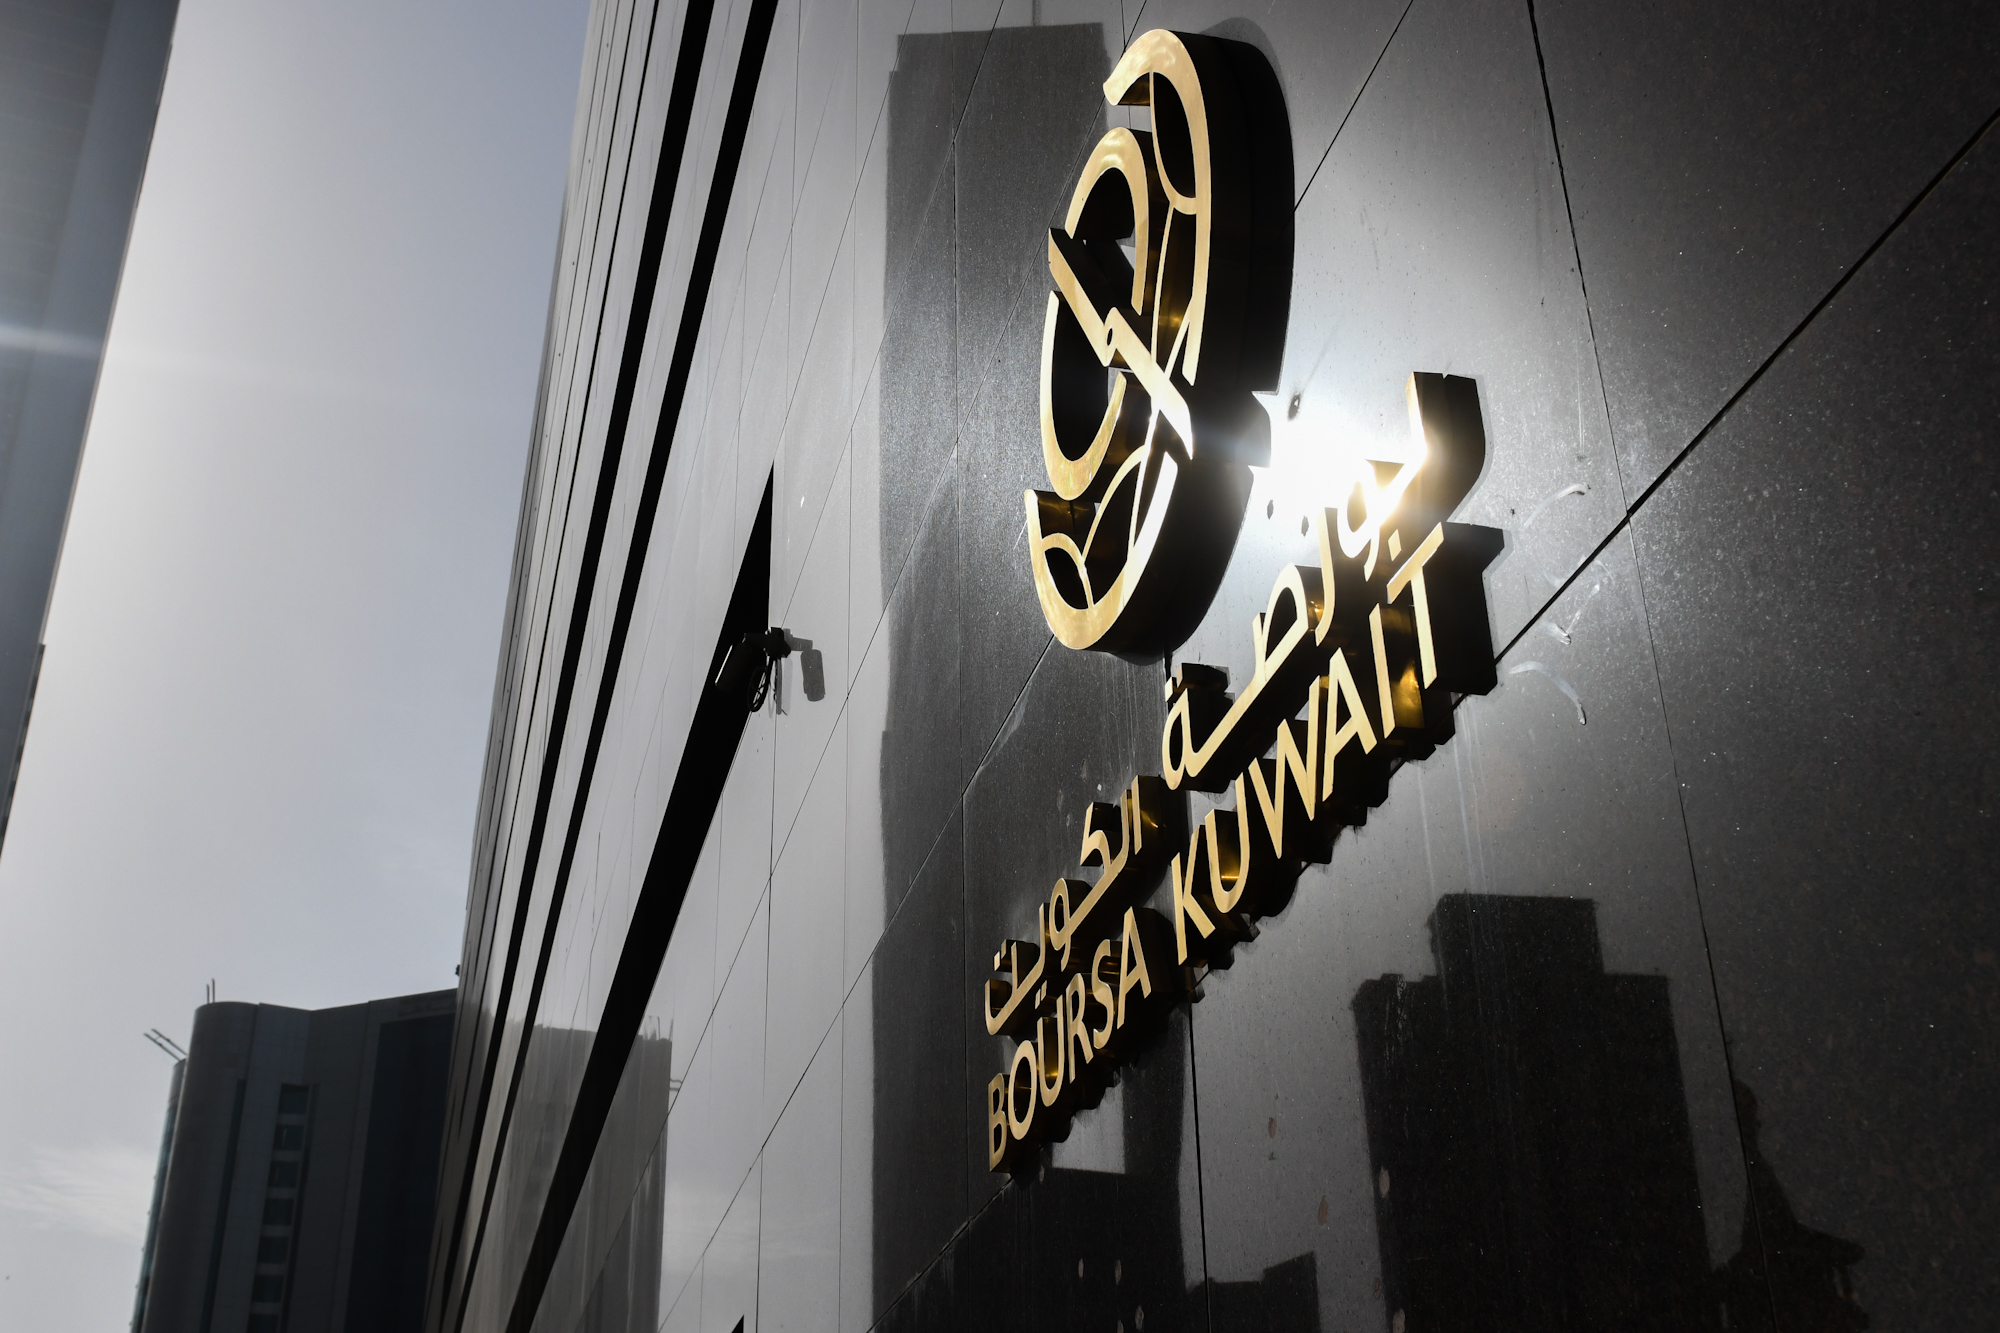 بورصة الكويت تغلق تعاملاتها على ارتفاع مؤشرها العام 4ر92 نقطة ليبلغ 91ر7206 بنسبة 3ر1 في المئة                                                                                                                                                            